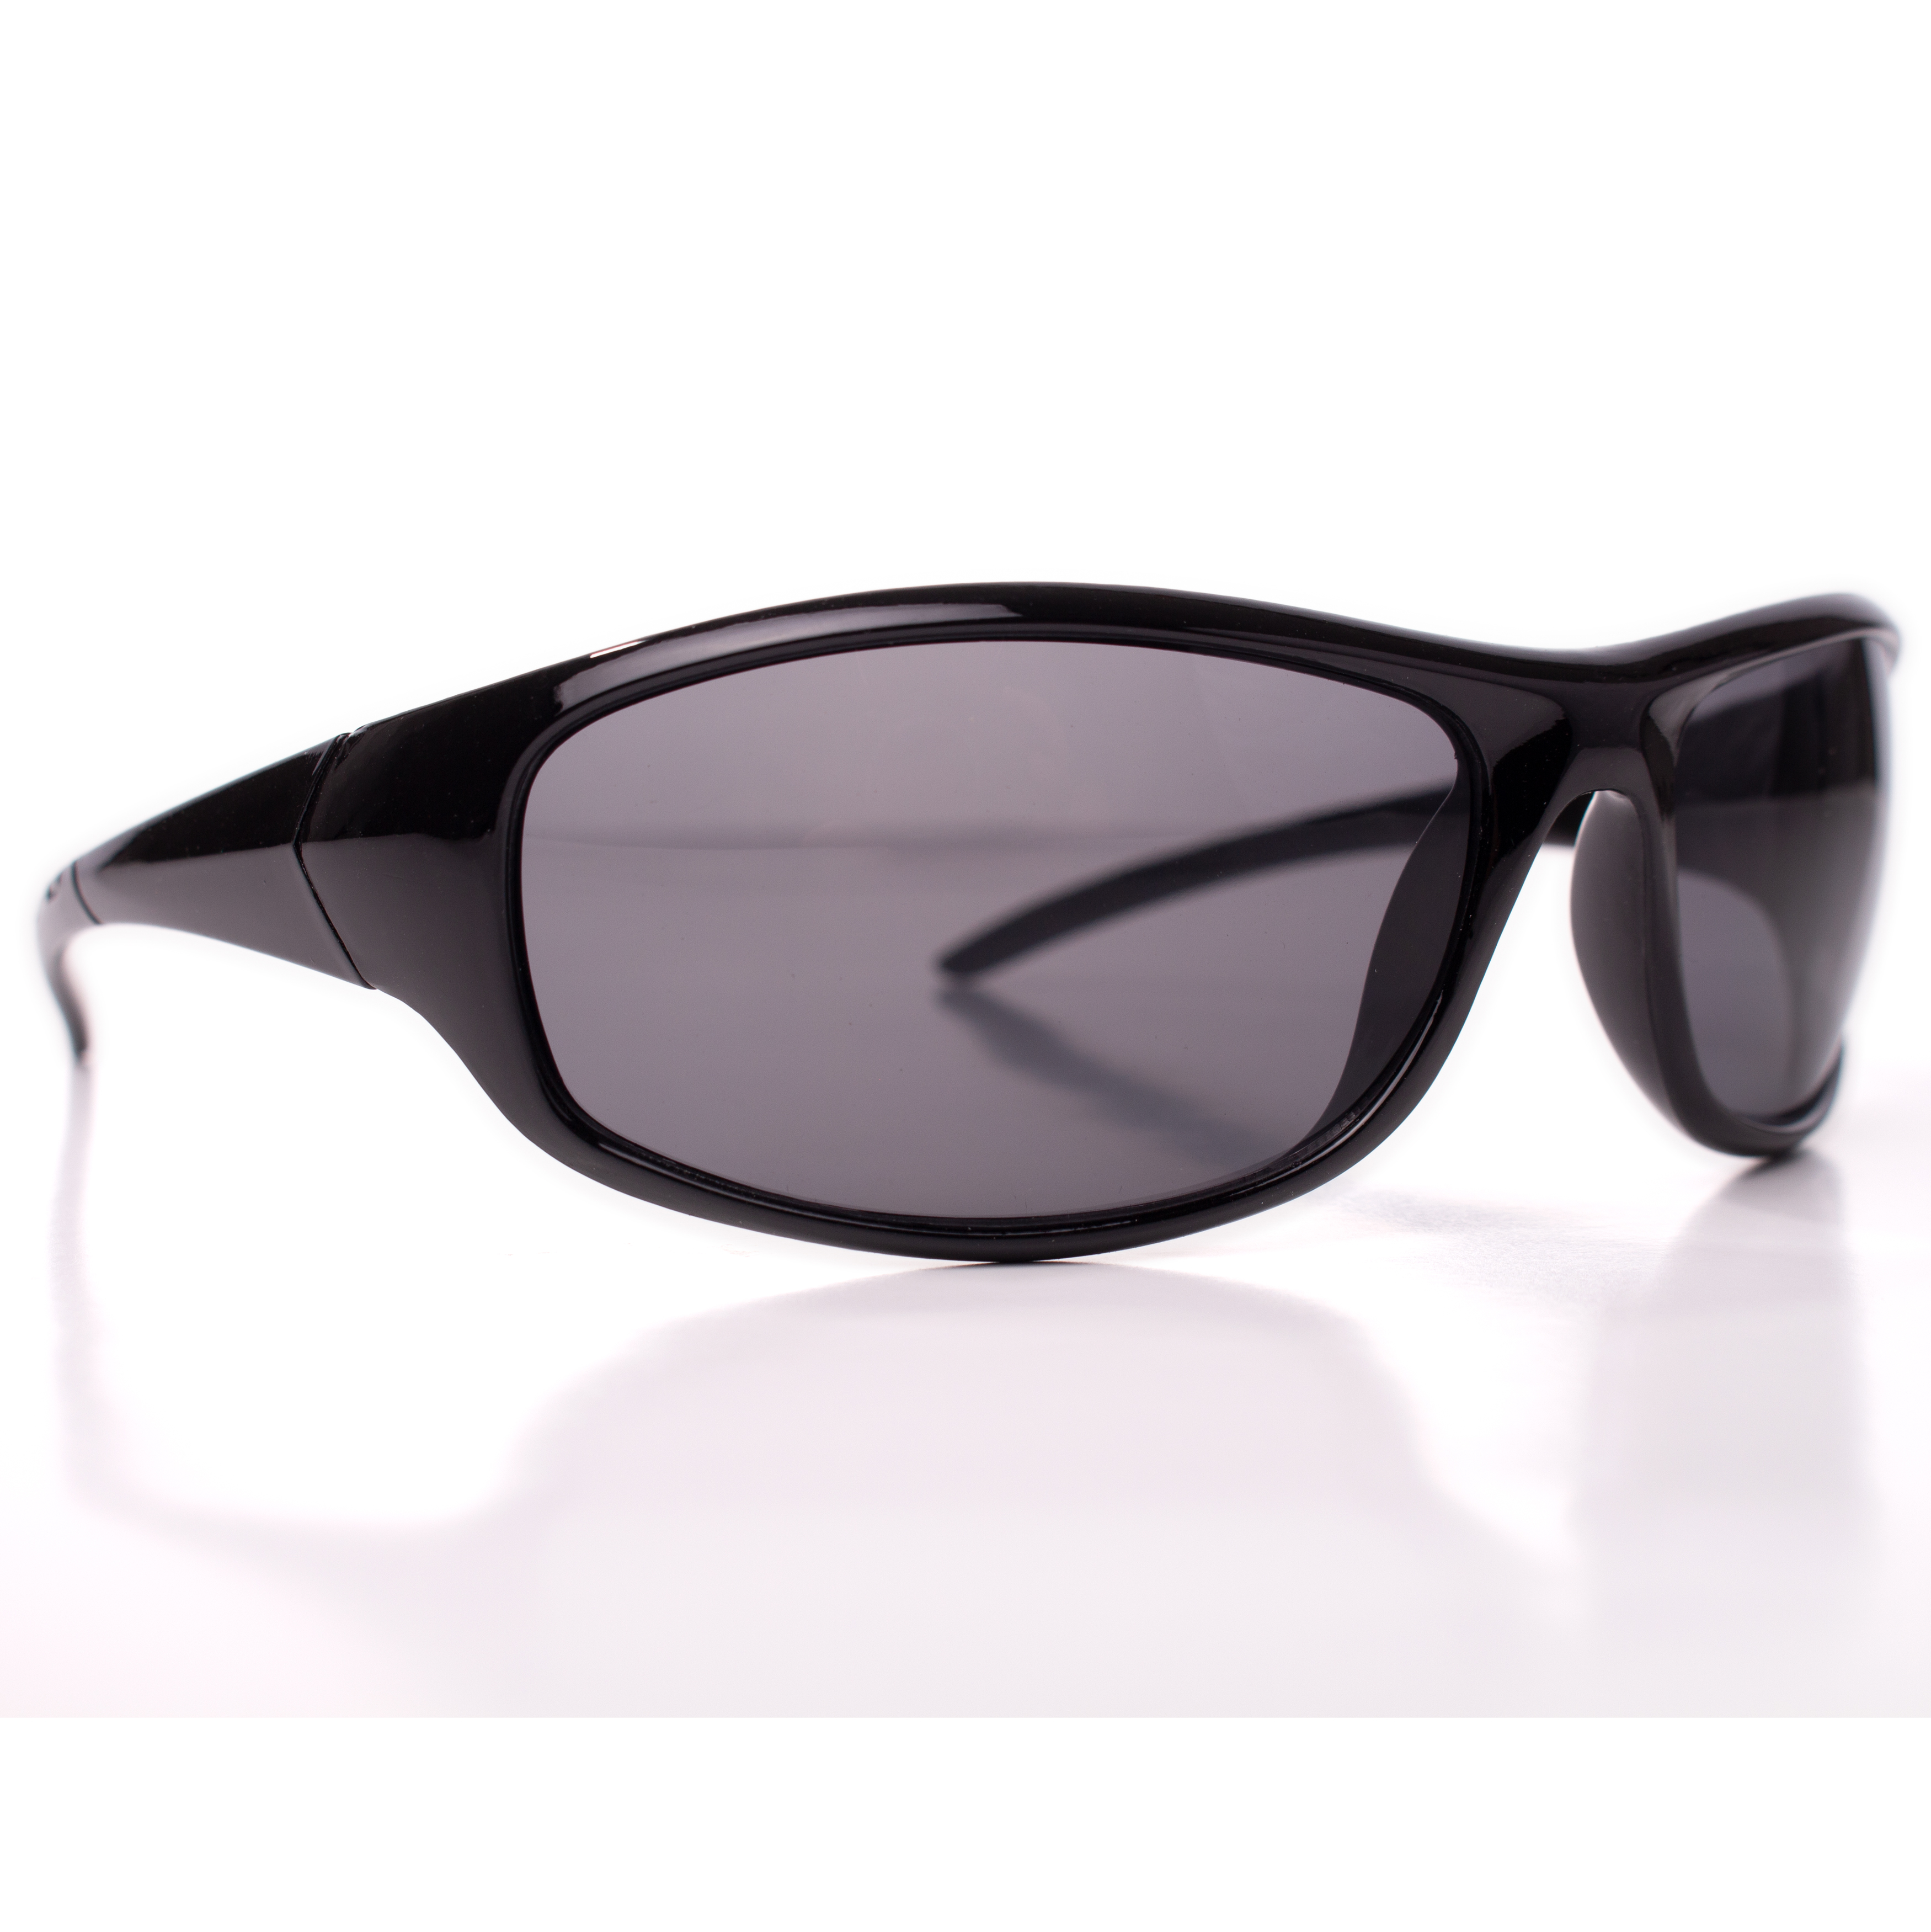 Men's Driving Wrap Sport Sunglasses, Black Oval Lens, Gloss or Matte Black Frame - image 1 of 3